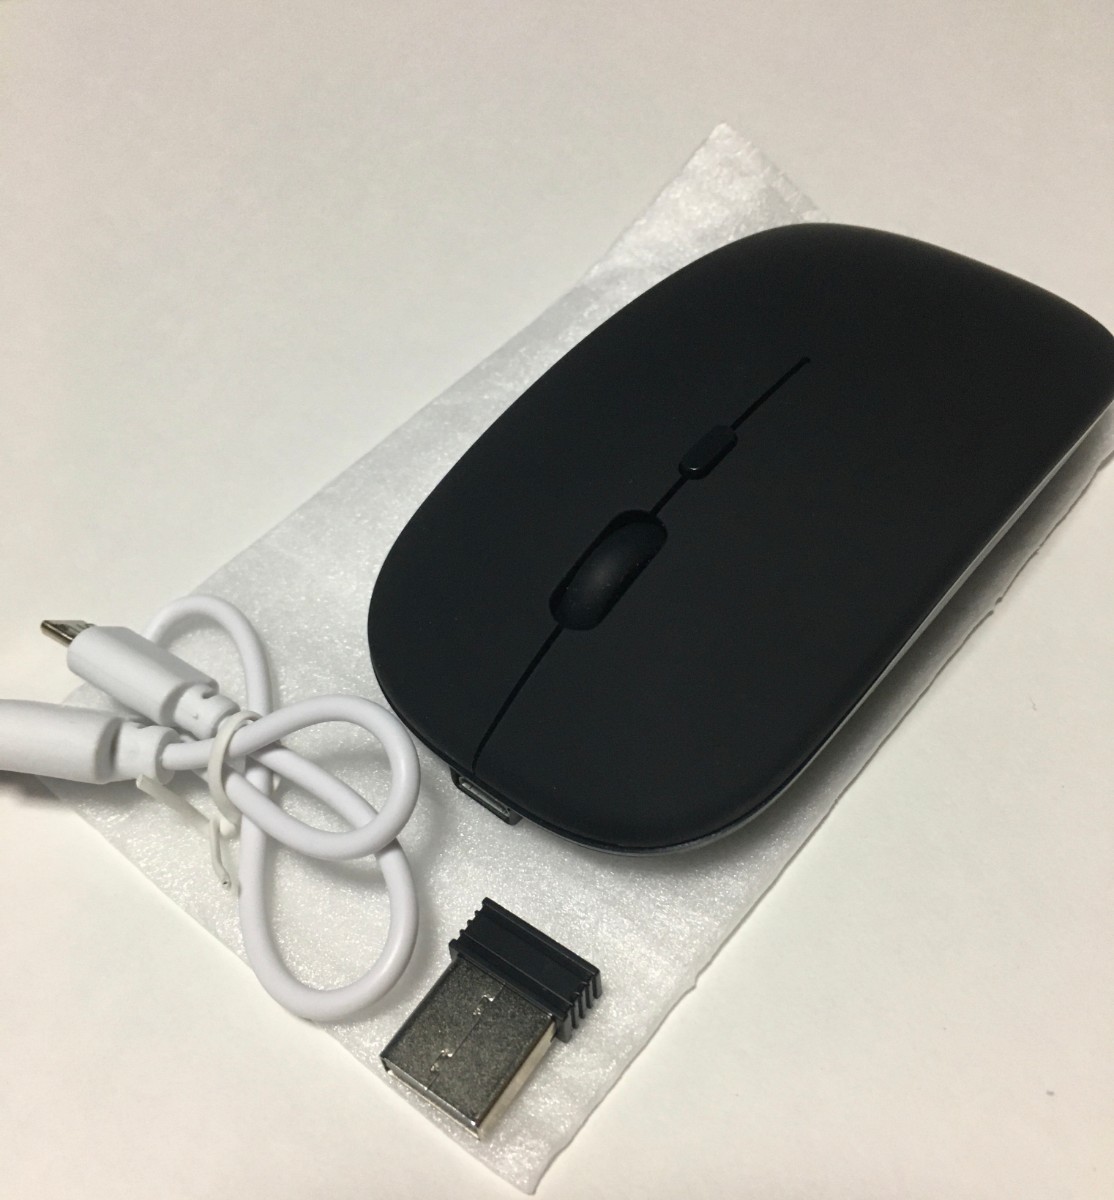 ワイヤレスマウス Bluetooth USB充電式 薄型 静音 無線マウス